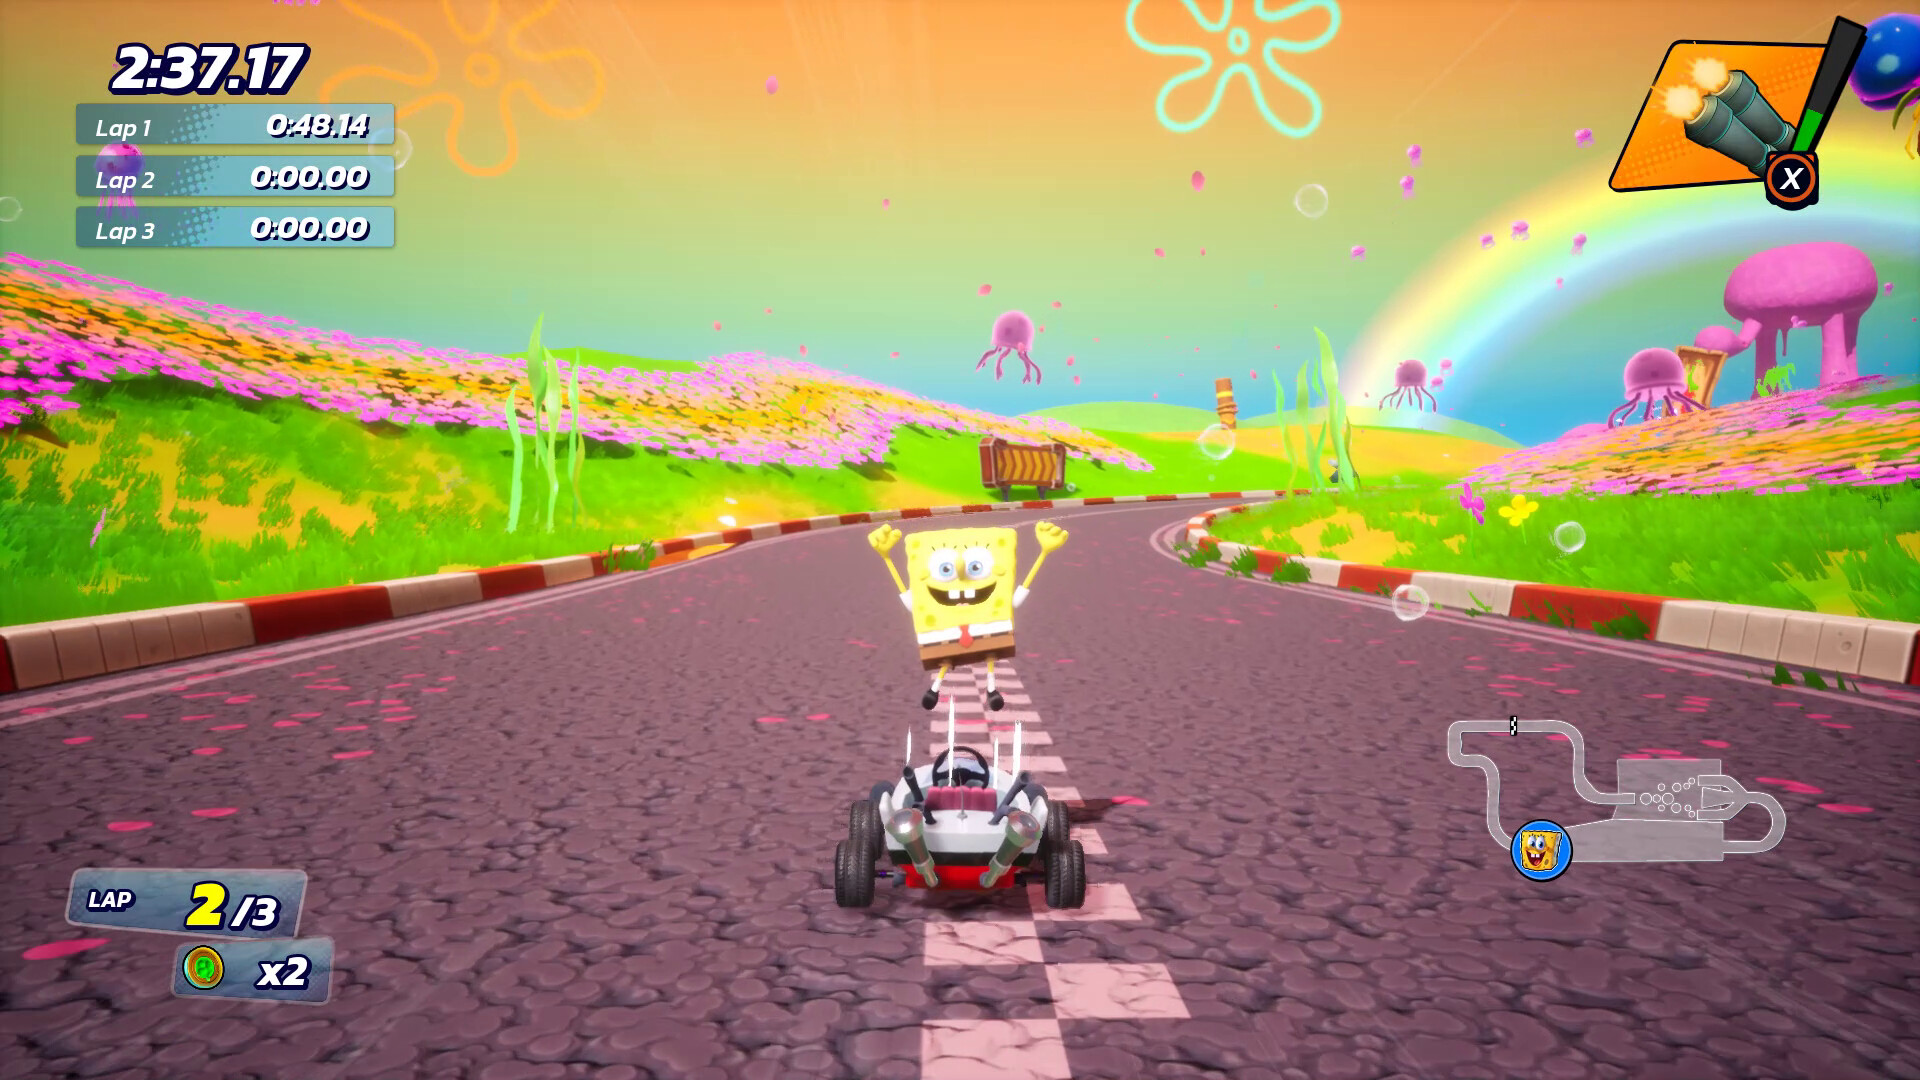 Nickelodeon Kart Racers 3: Slime Speedway Steam CD Key 7.47 $